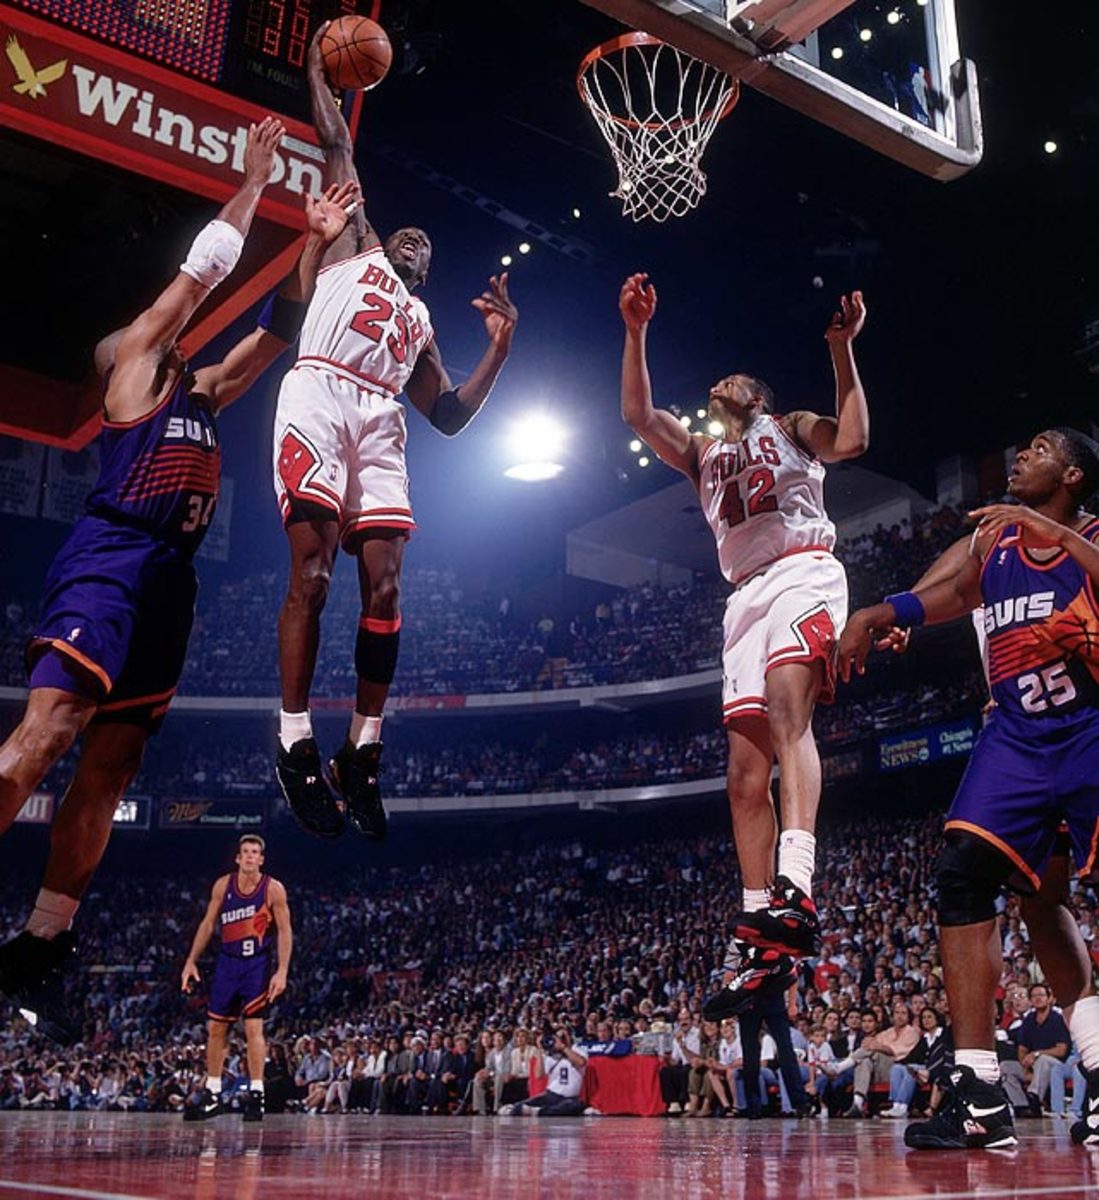 June 16, 1993: Scores 55 points vs. Suns